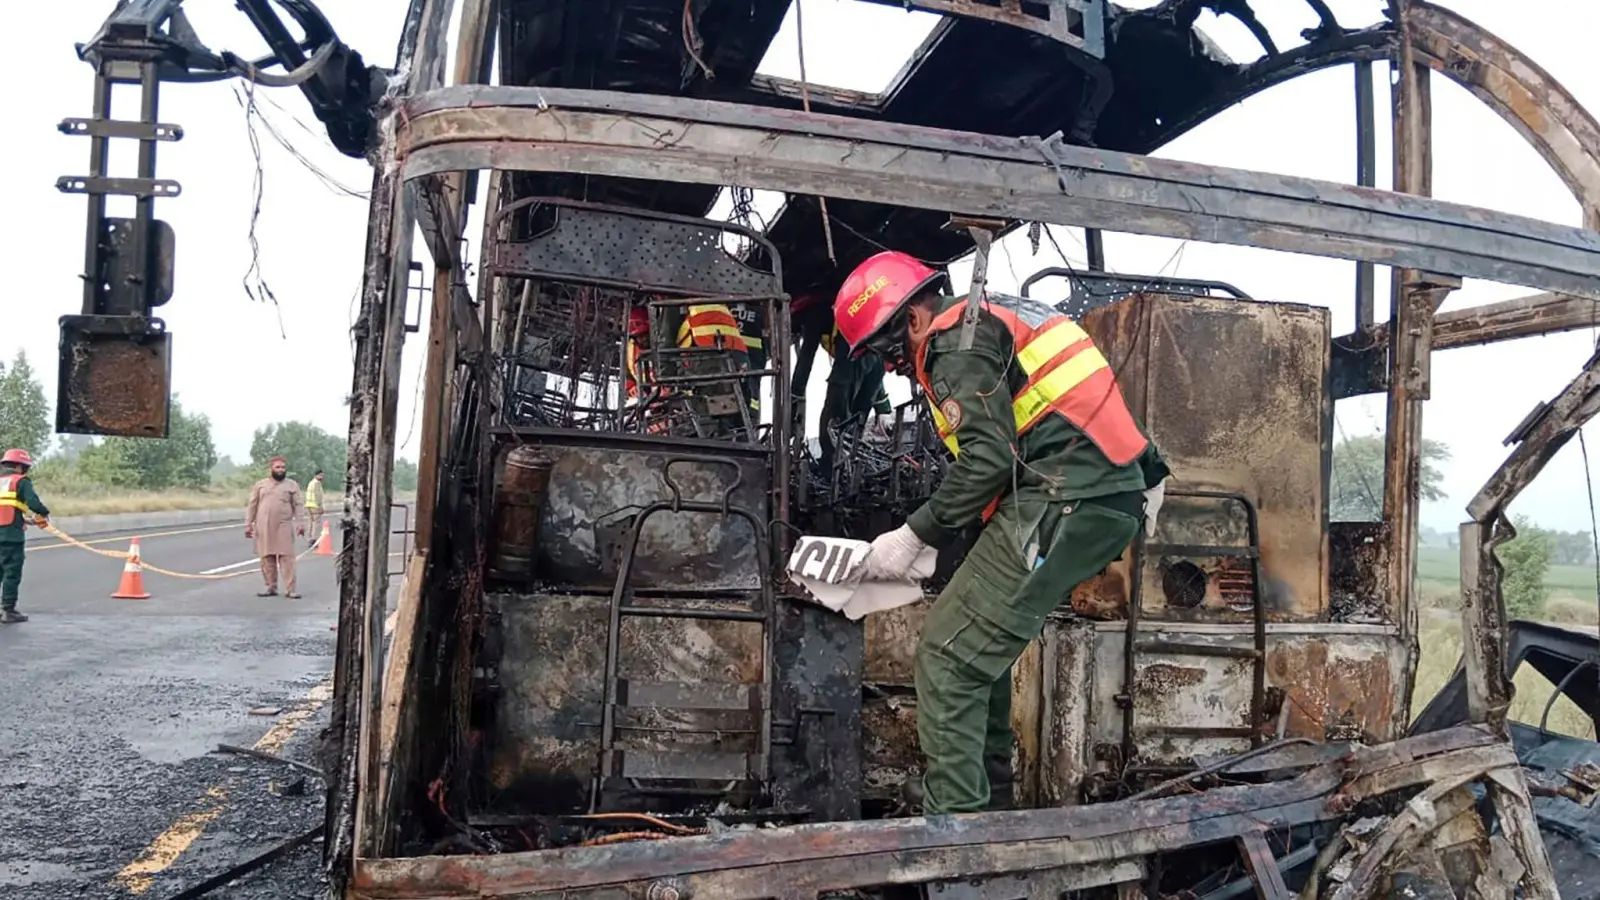 Rettungskräfte untersuchen den verbrannten Bus an der Unfallstelle auf einer Autobahn. (Foto: Uncredited/Rescue 1122 Emergency Department/AP/dpa)